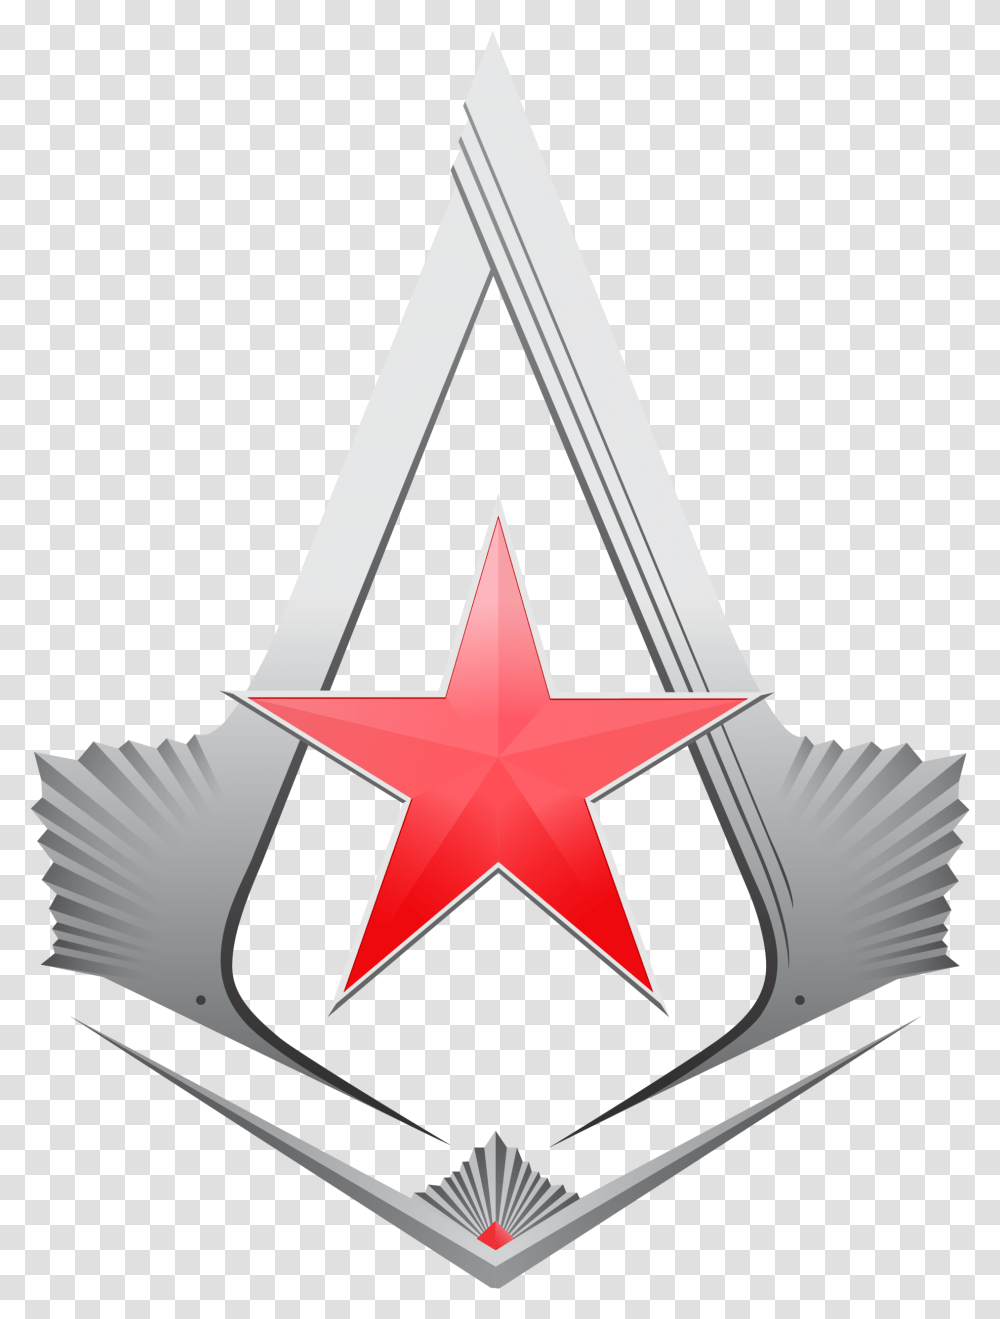 Assassins Creed Symbol Assassin's Creed Russia Logo, Star Symbol Transparent Png